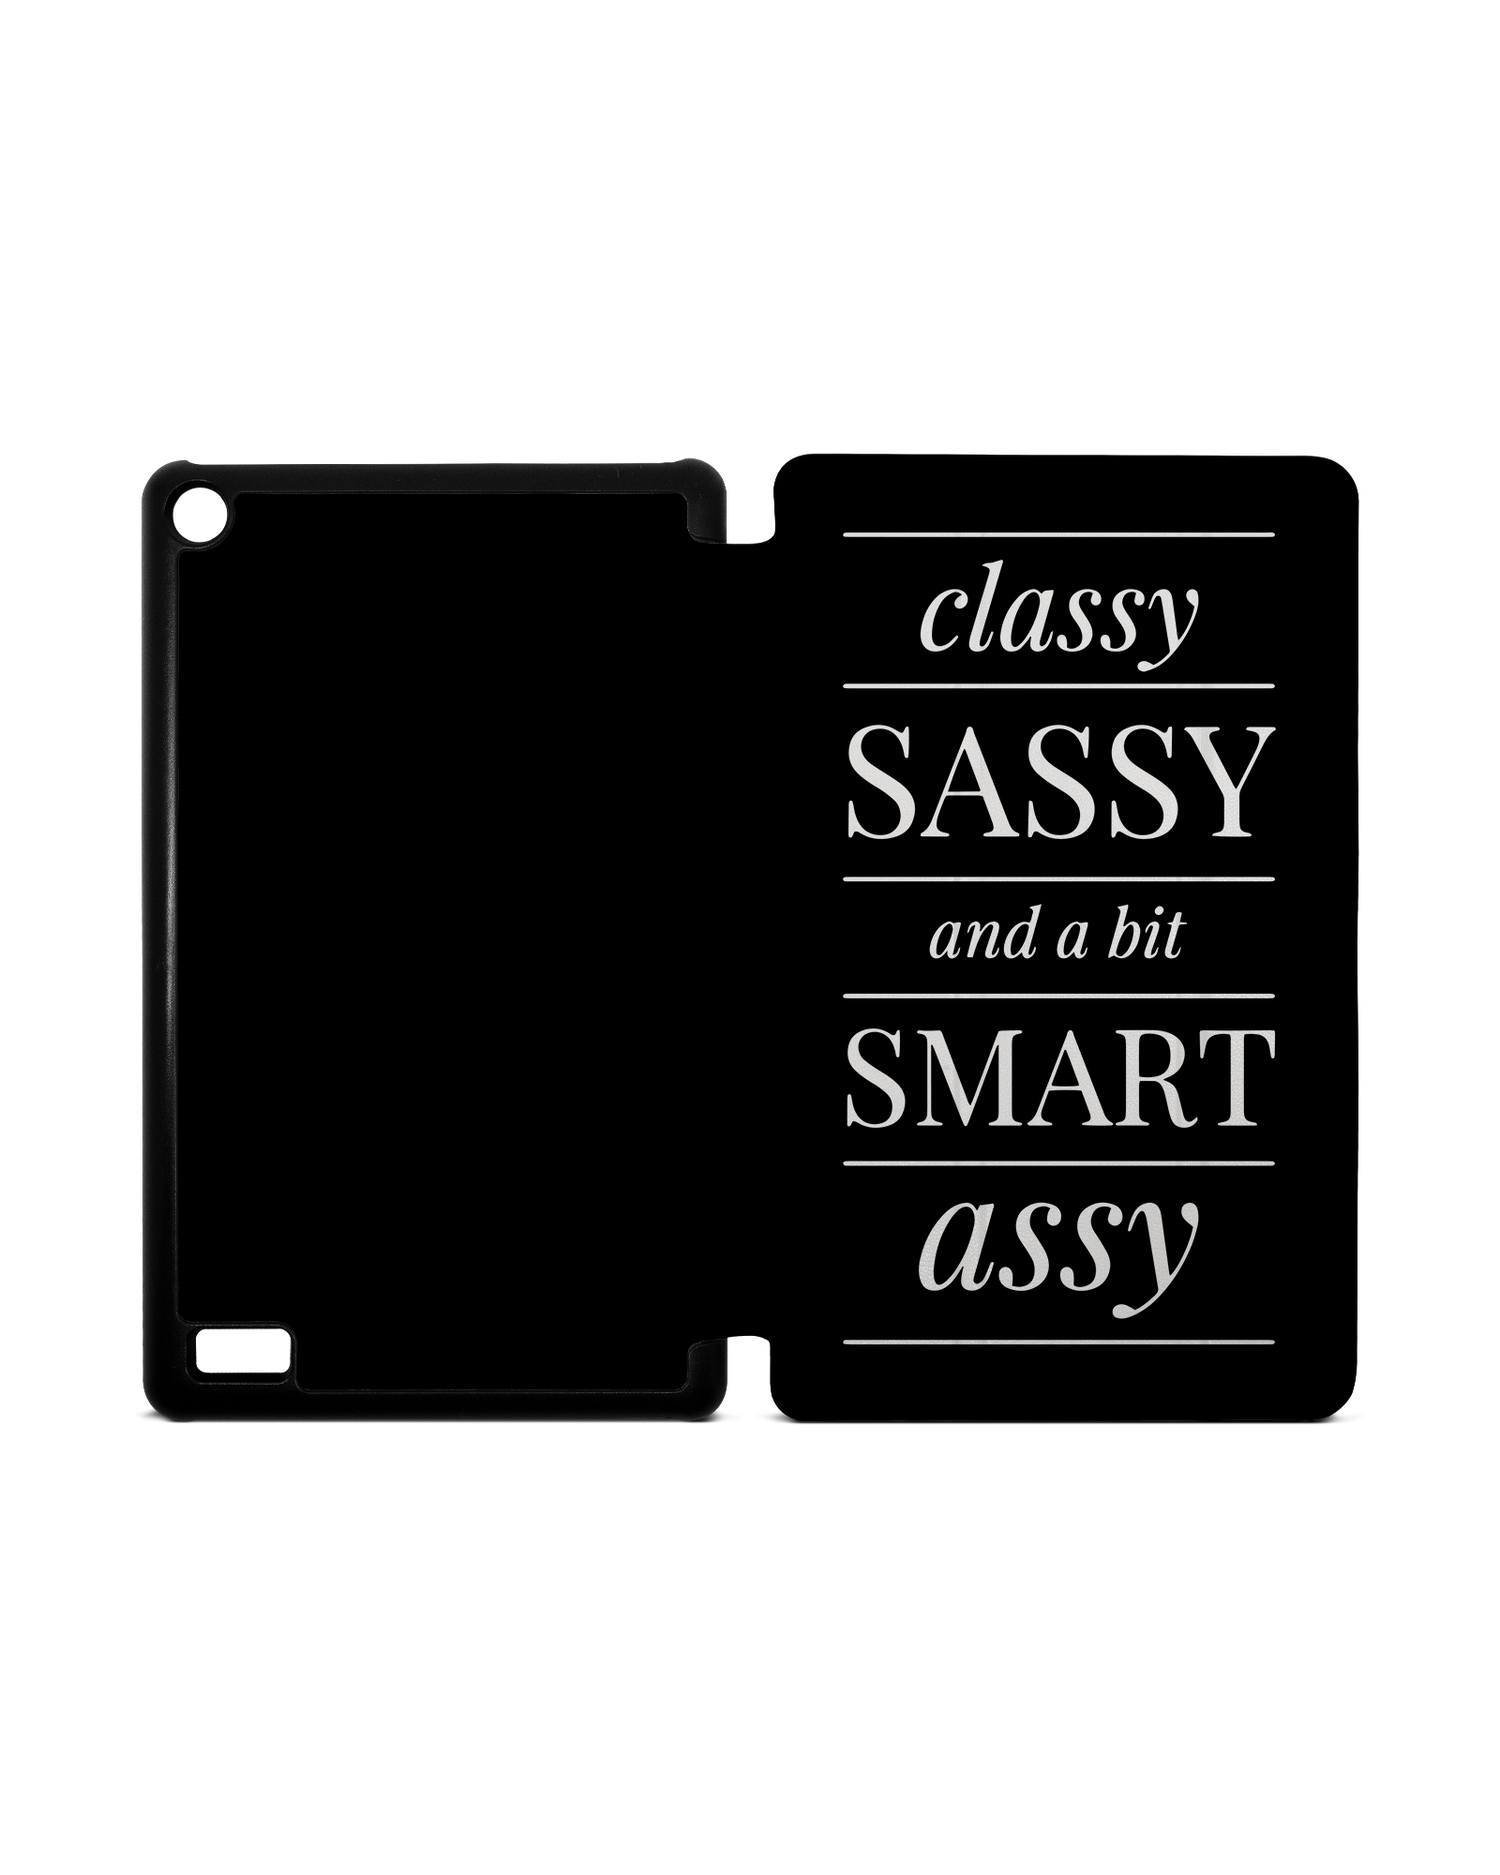 Classy Sassy Tablet Smart Case für Amazon Fire 7: Aufgeklappt